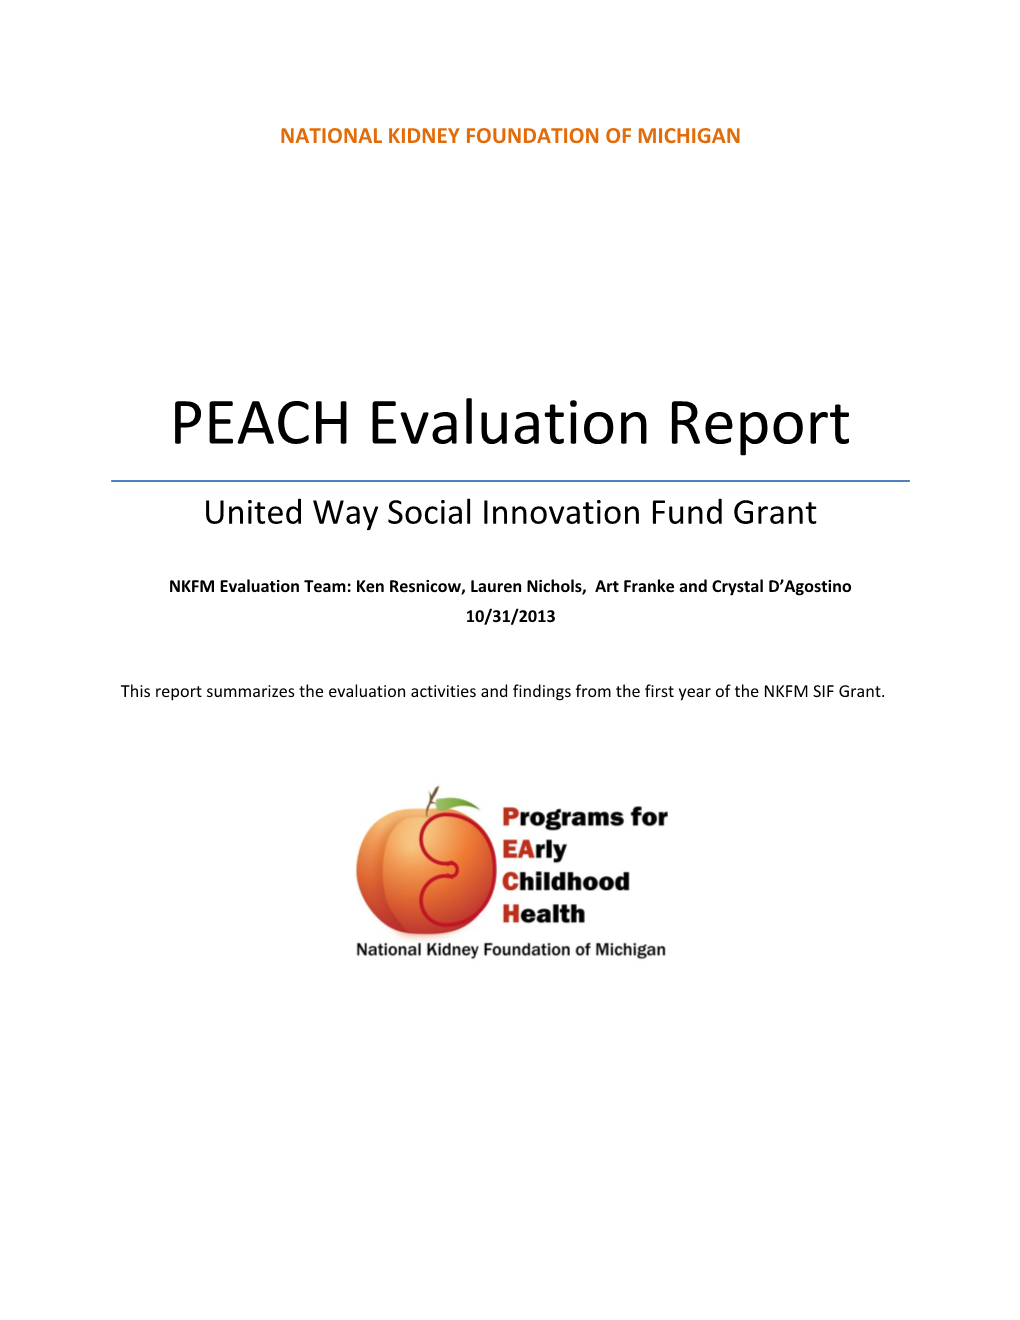 PEACH Evaluation Report